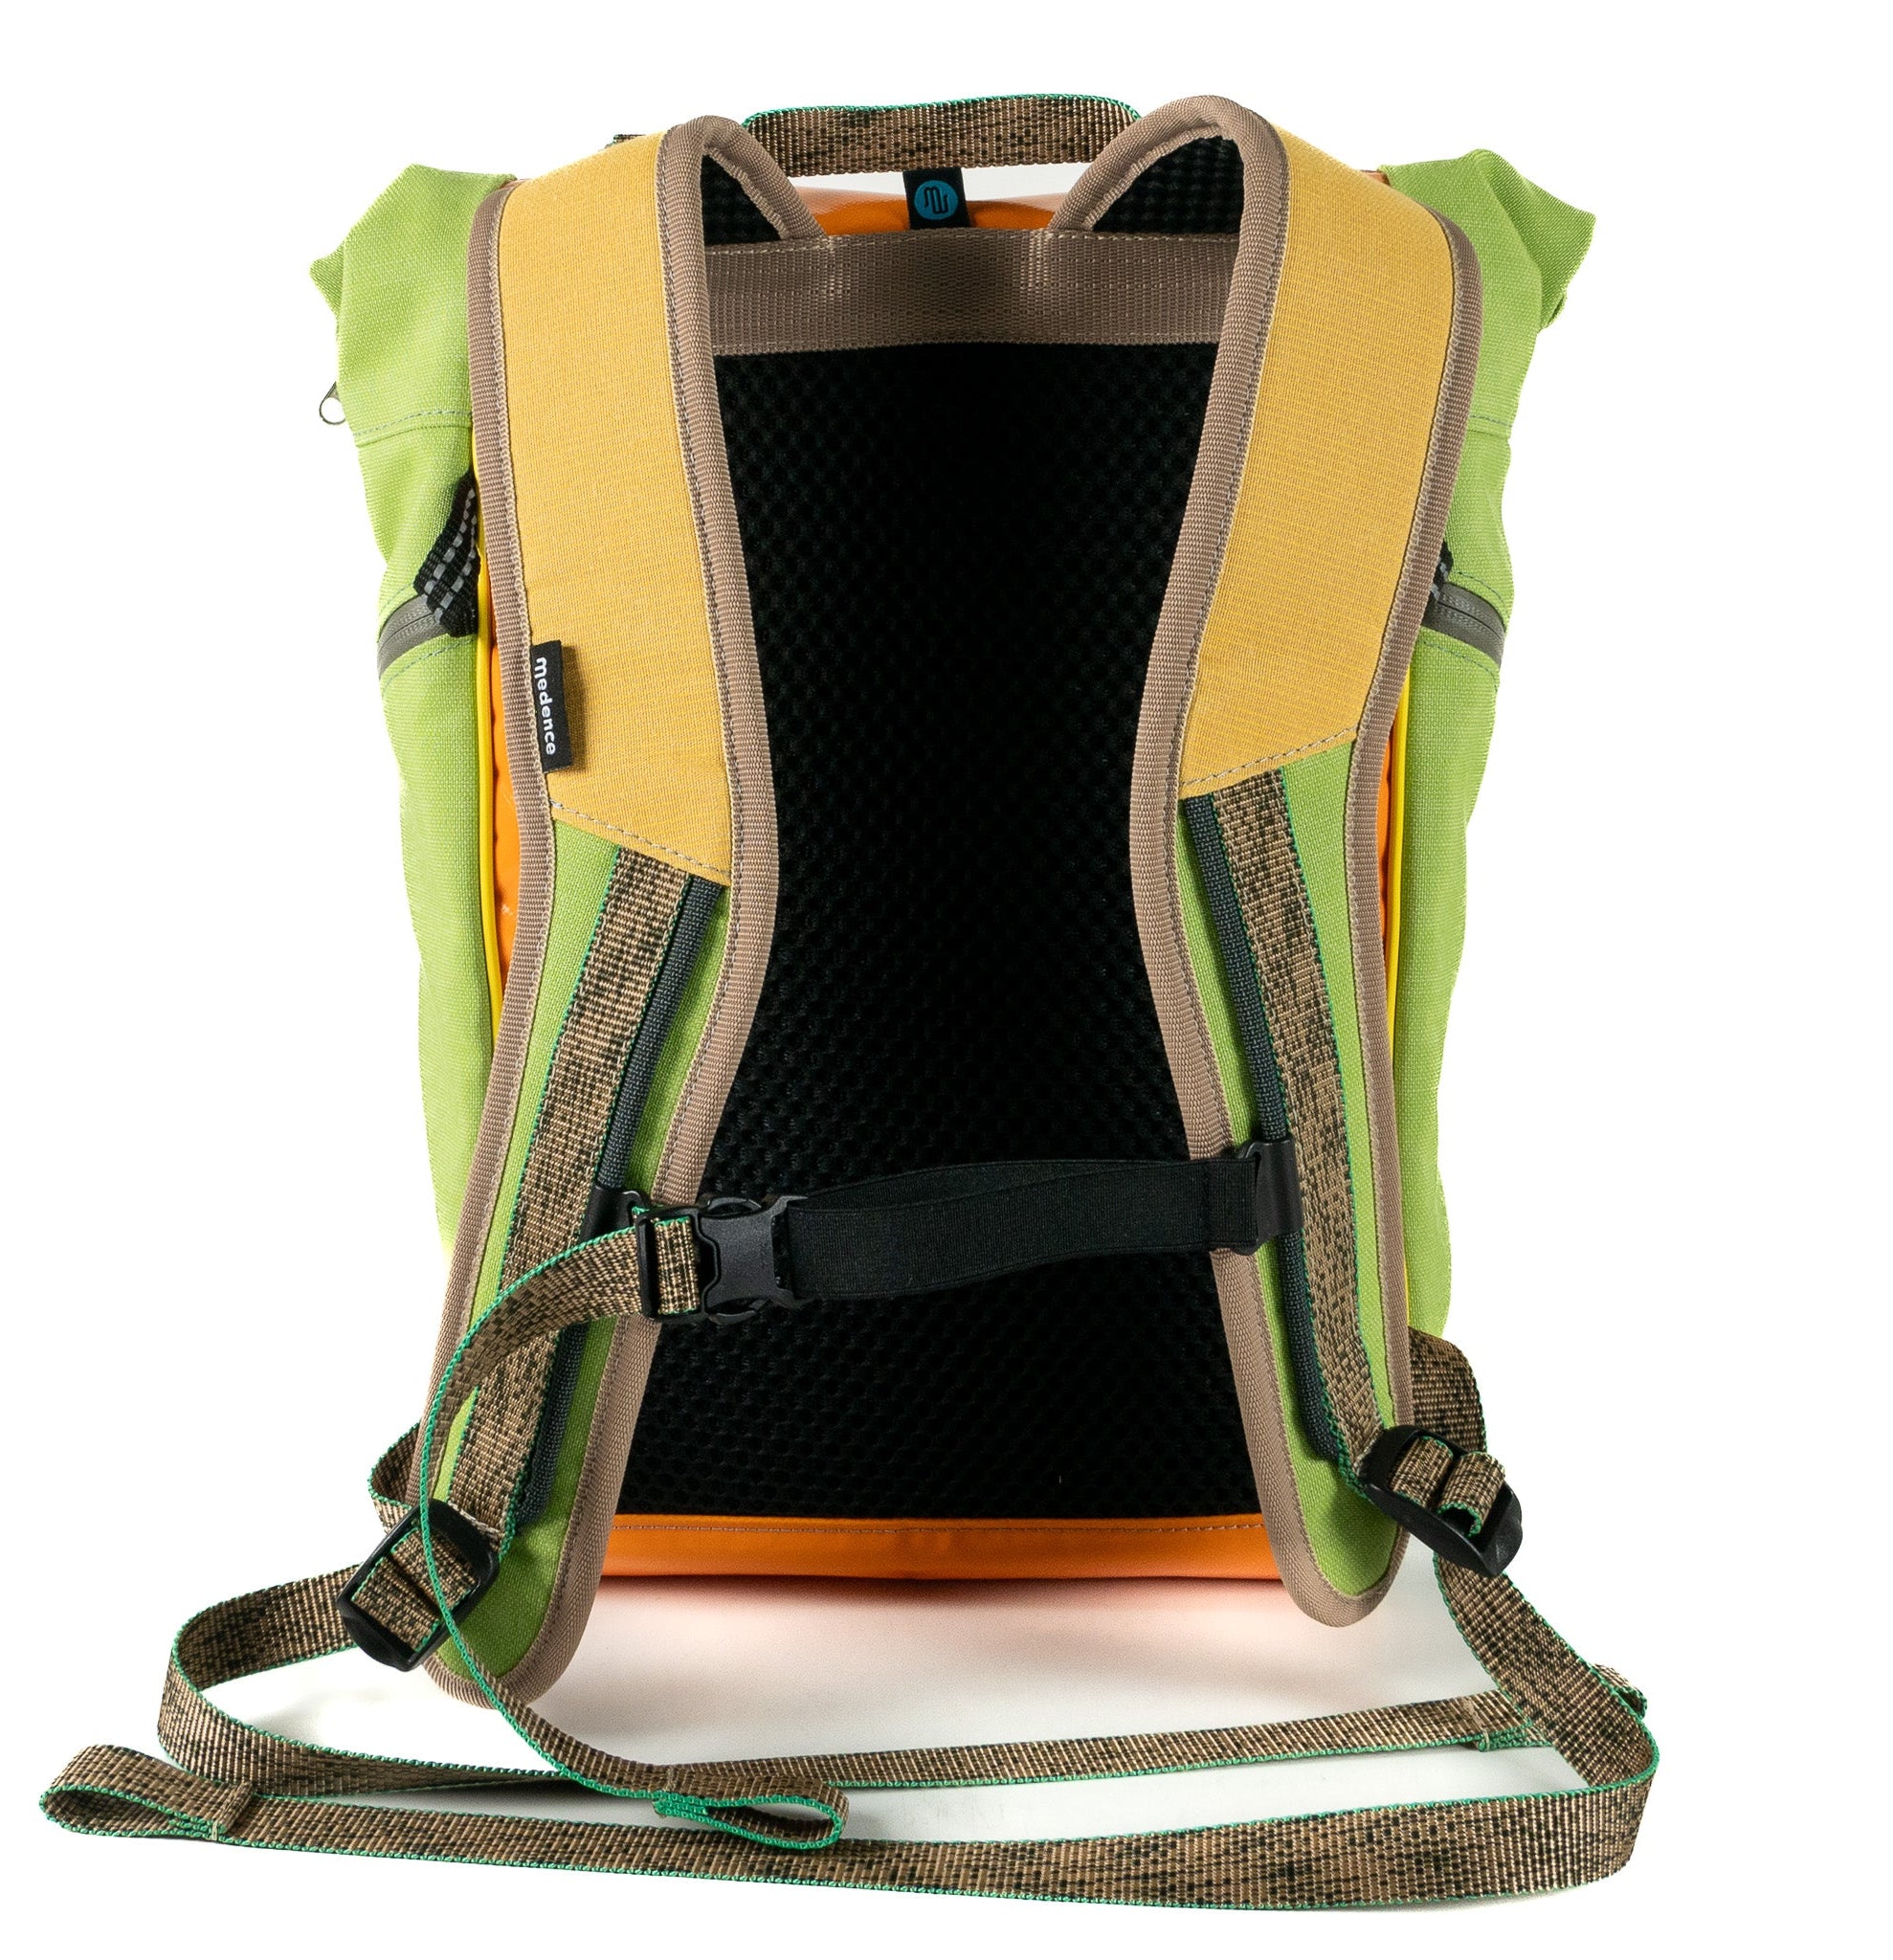 BUDDY No. 130 - Backpacks - medencebag